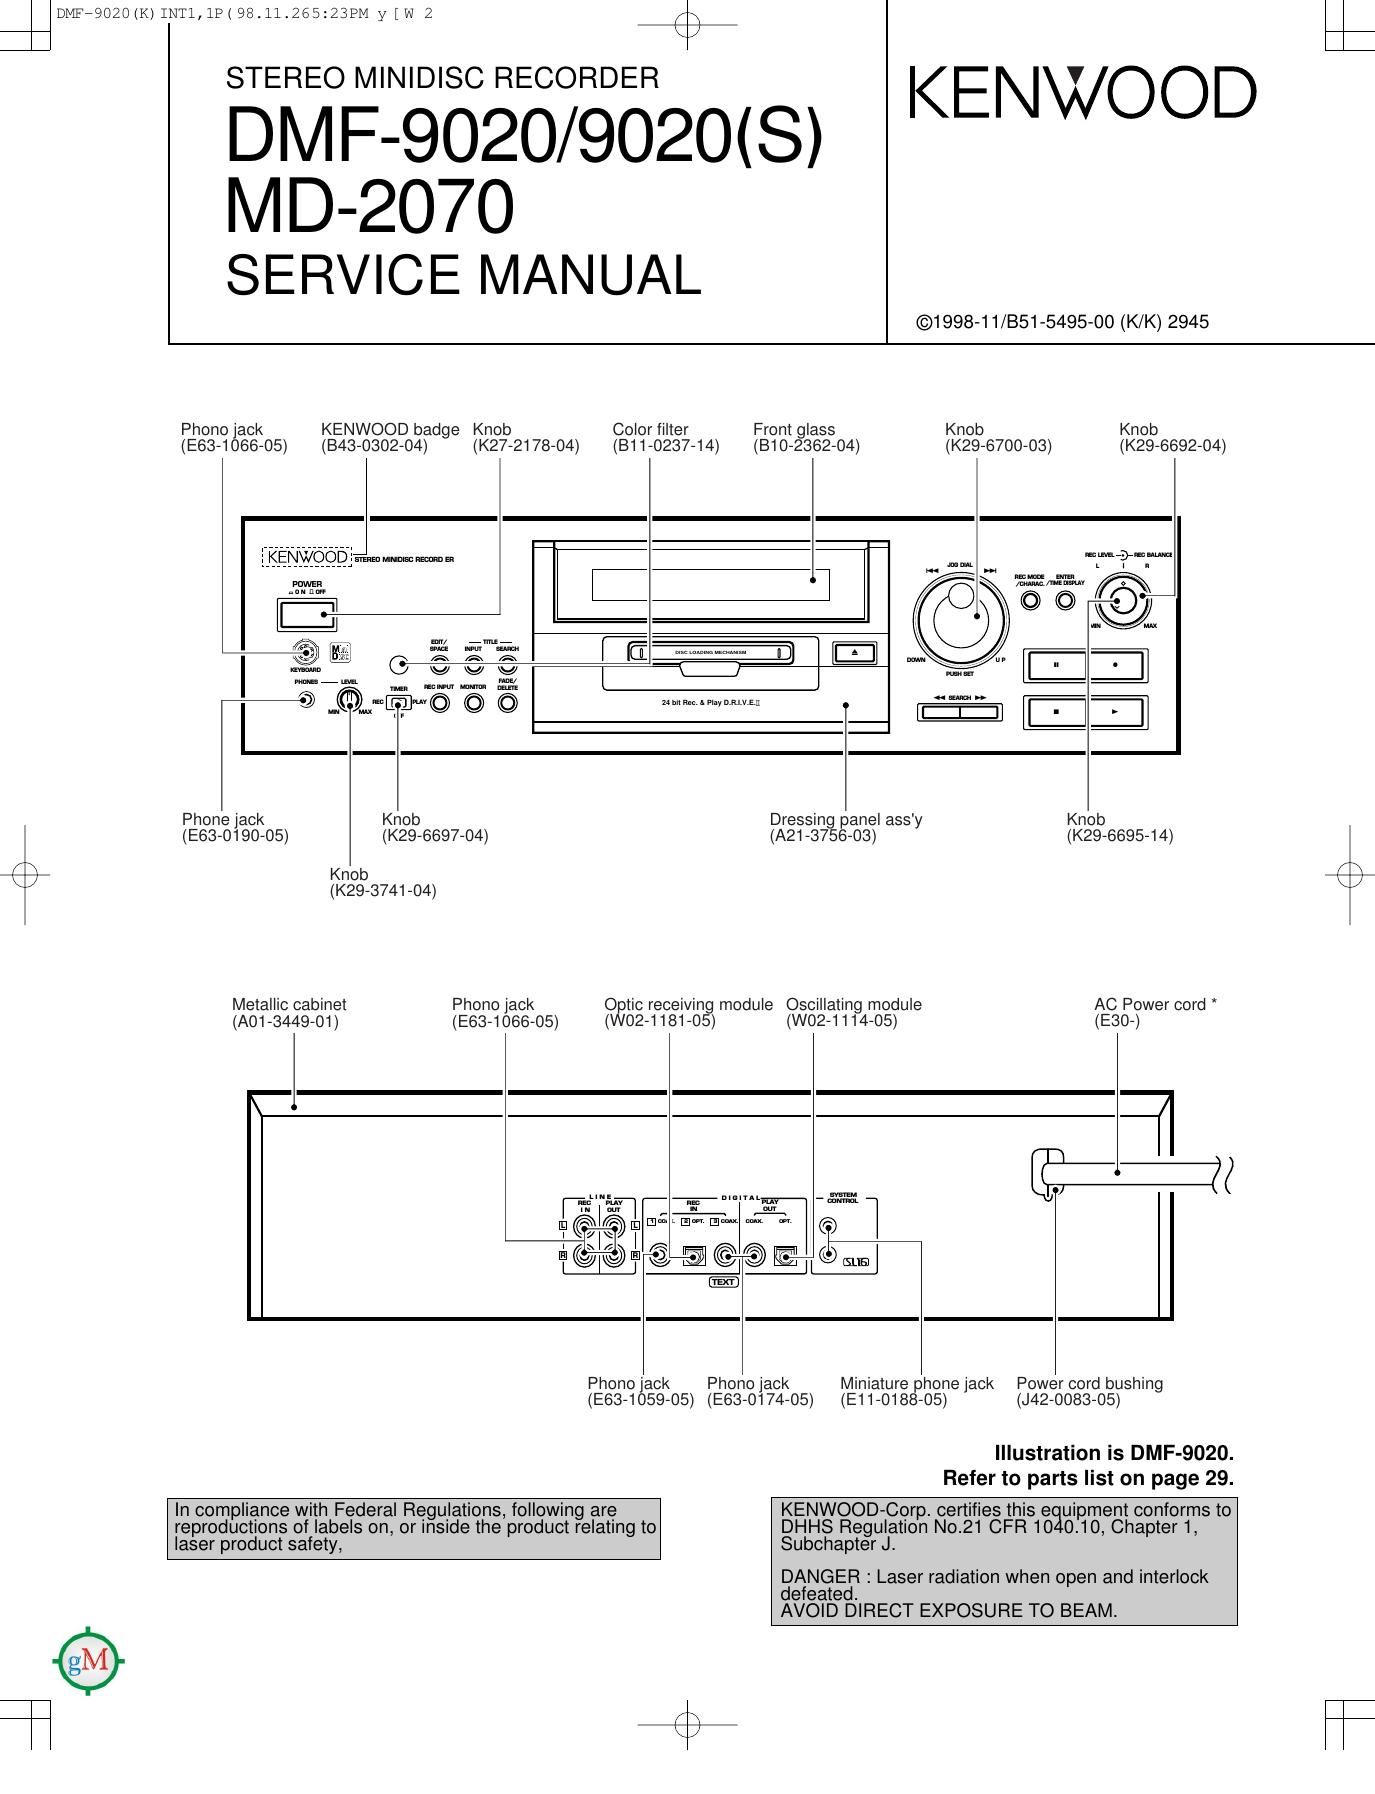 Kenwood DMF 9020 Service Manual